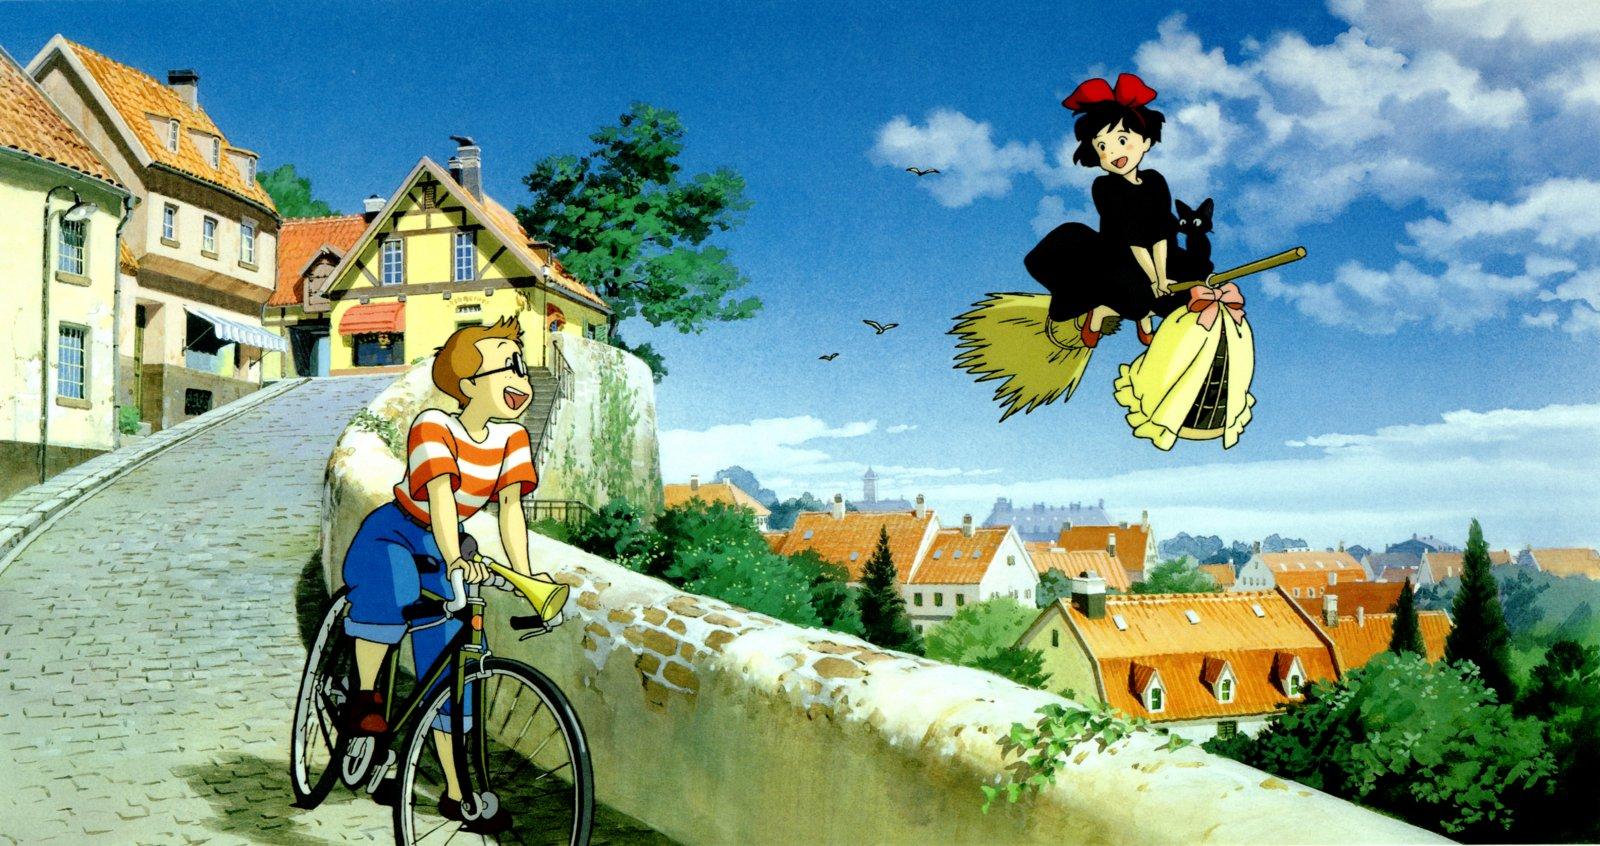 Desktop Wallpaper Studio Ghibli 1920 X 1080 375 Kb Jpeg | HD ...